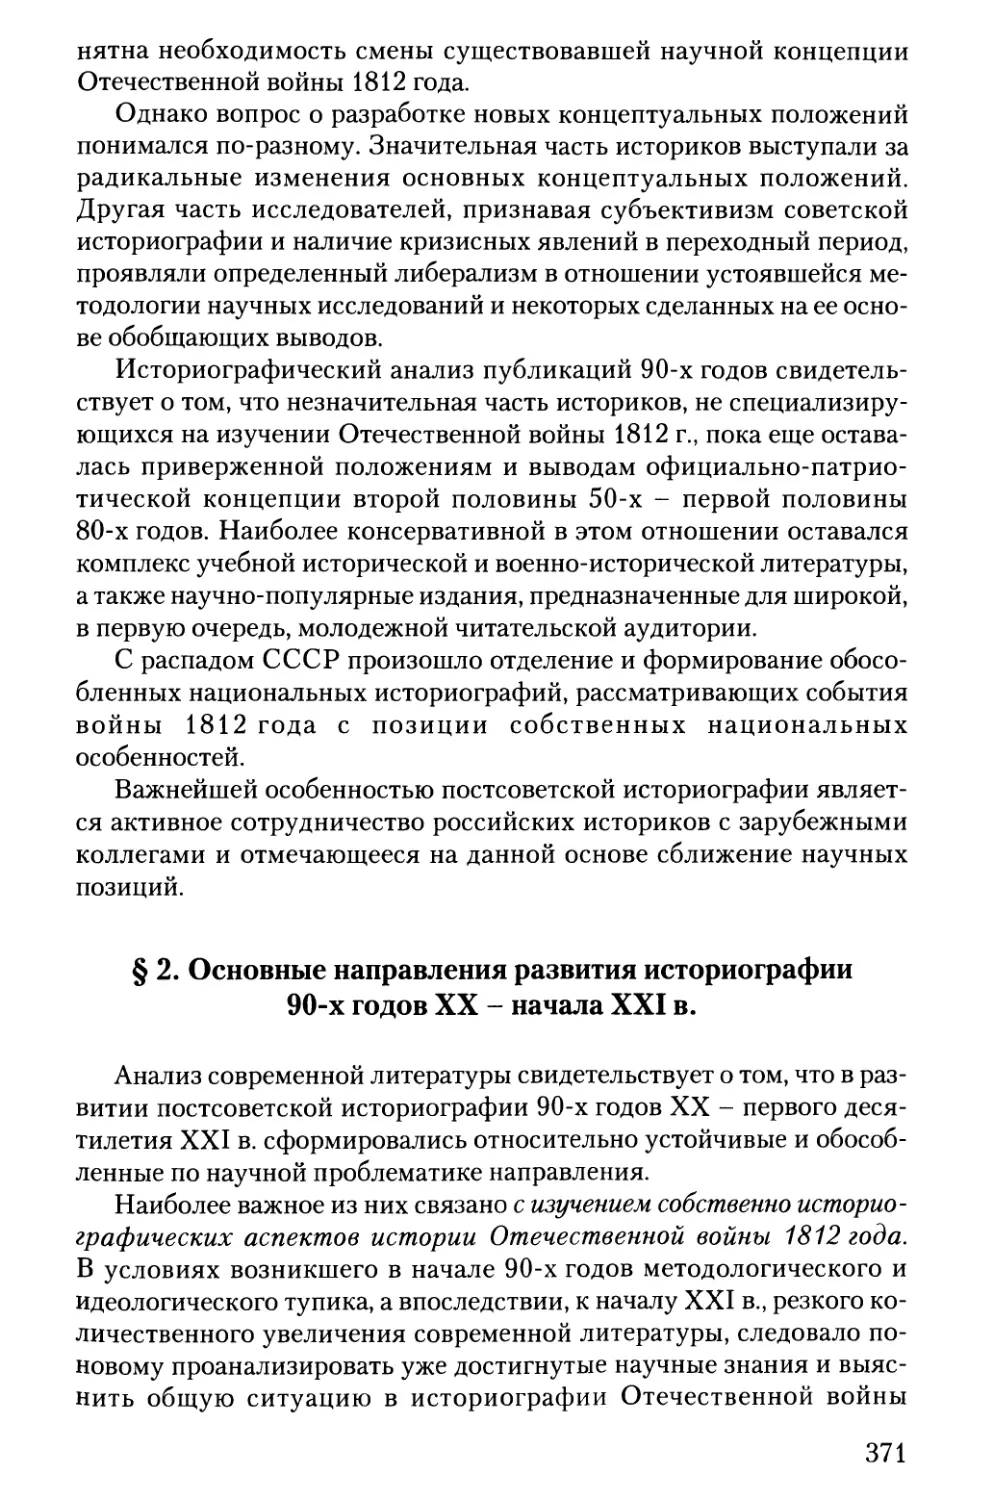 2. Основные направления развития историографии 90-х годов XX - начала XXI в.